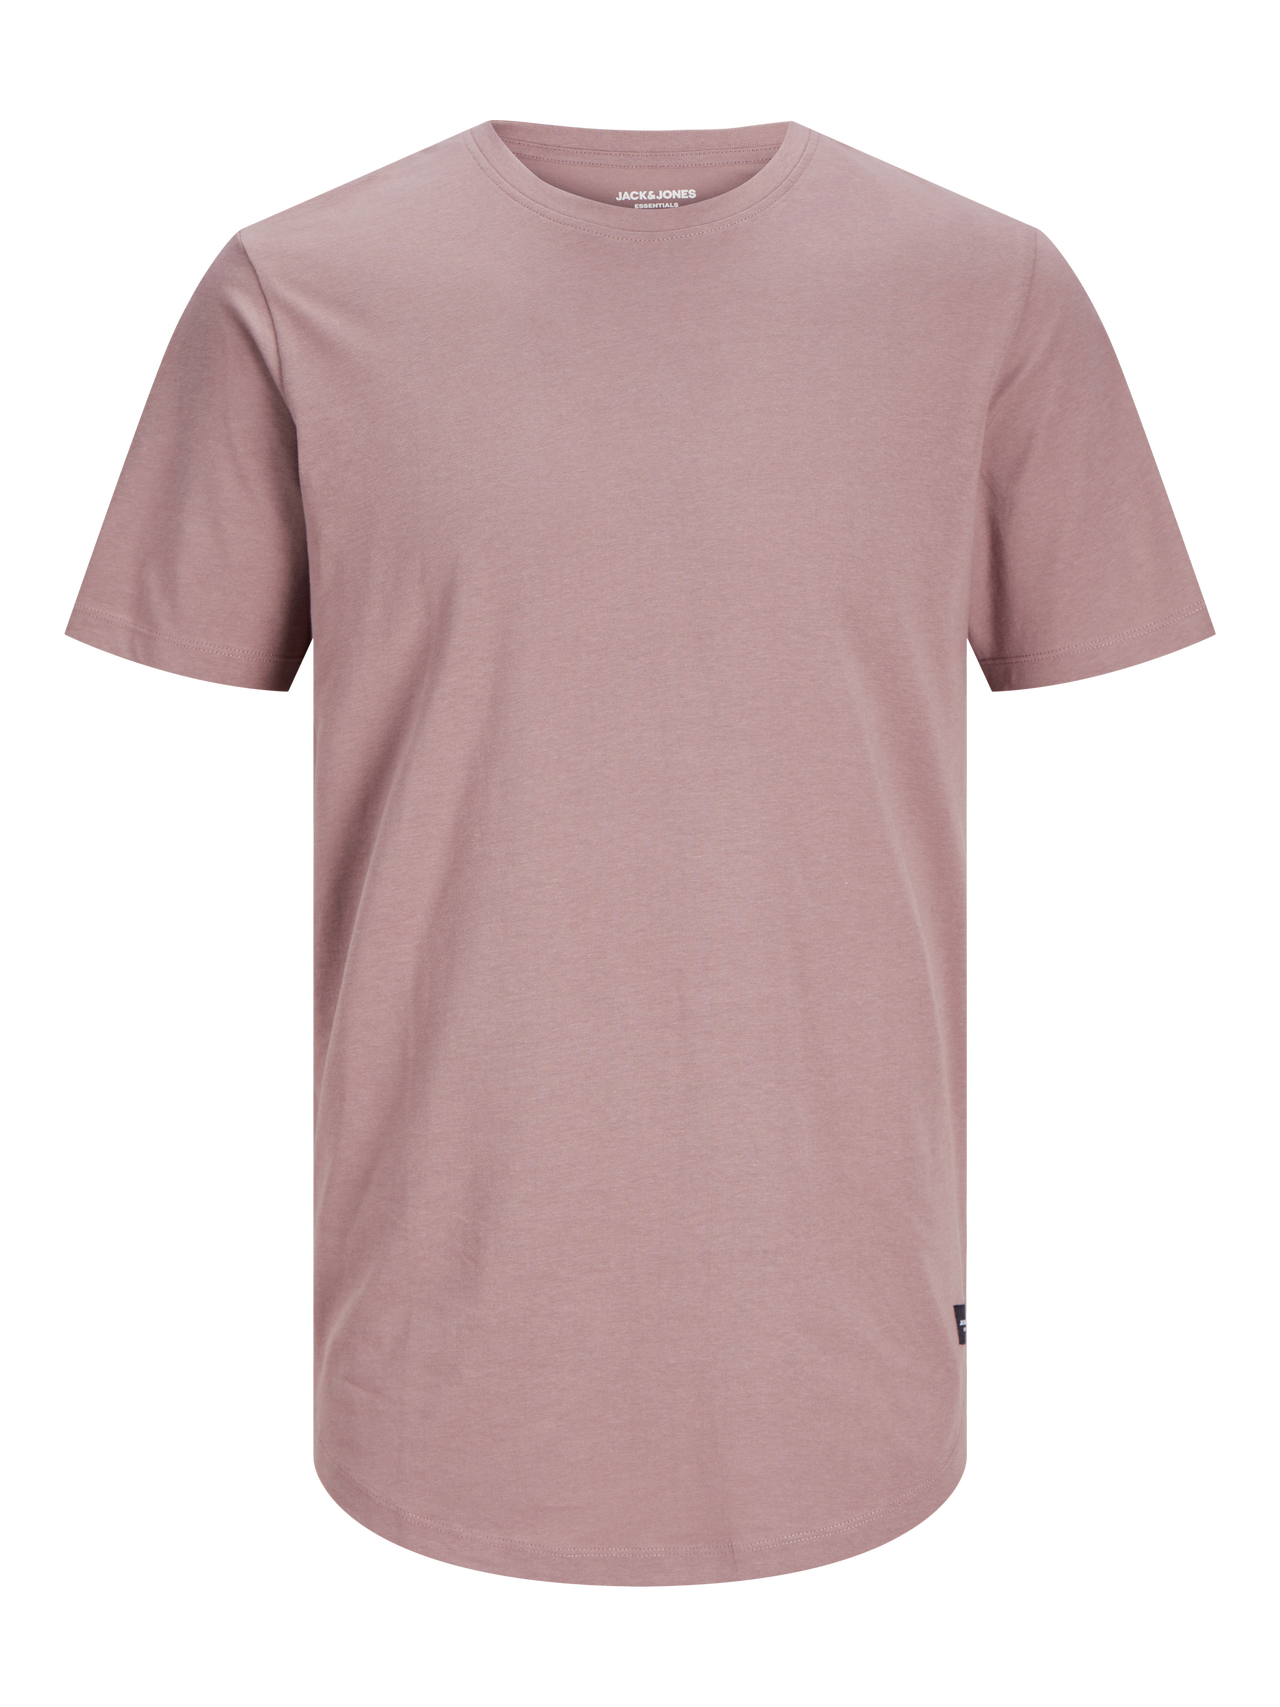 Jack & Jones Enfärgat Rundringning T-shirt -Twilight Mauve - 12113648